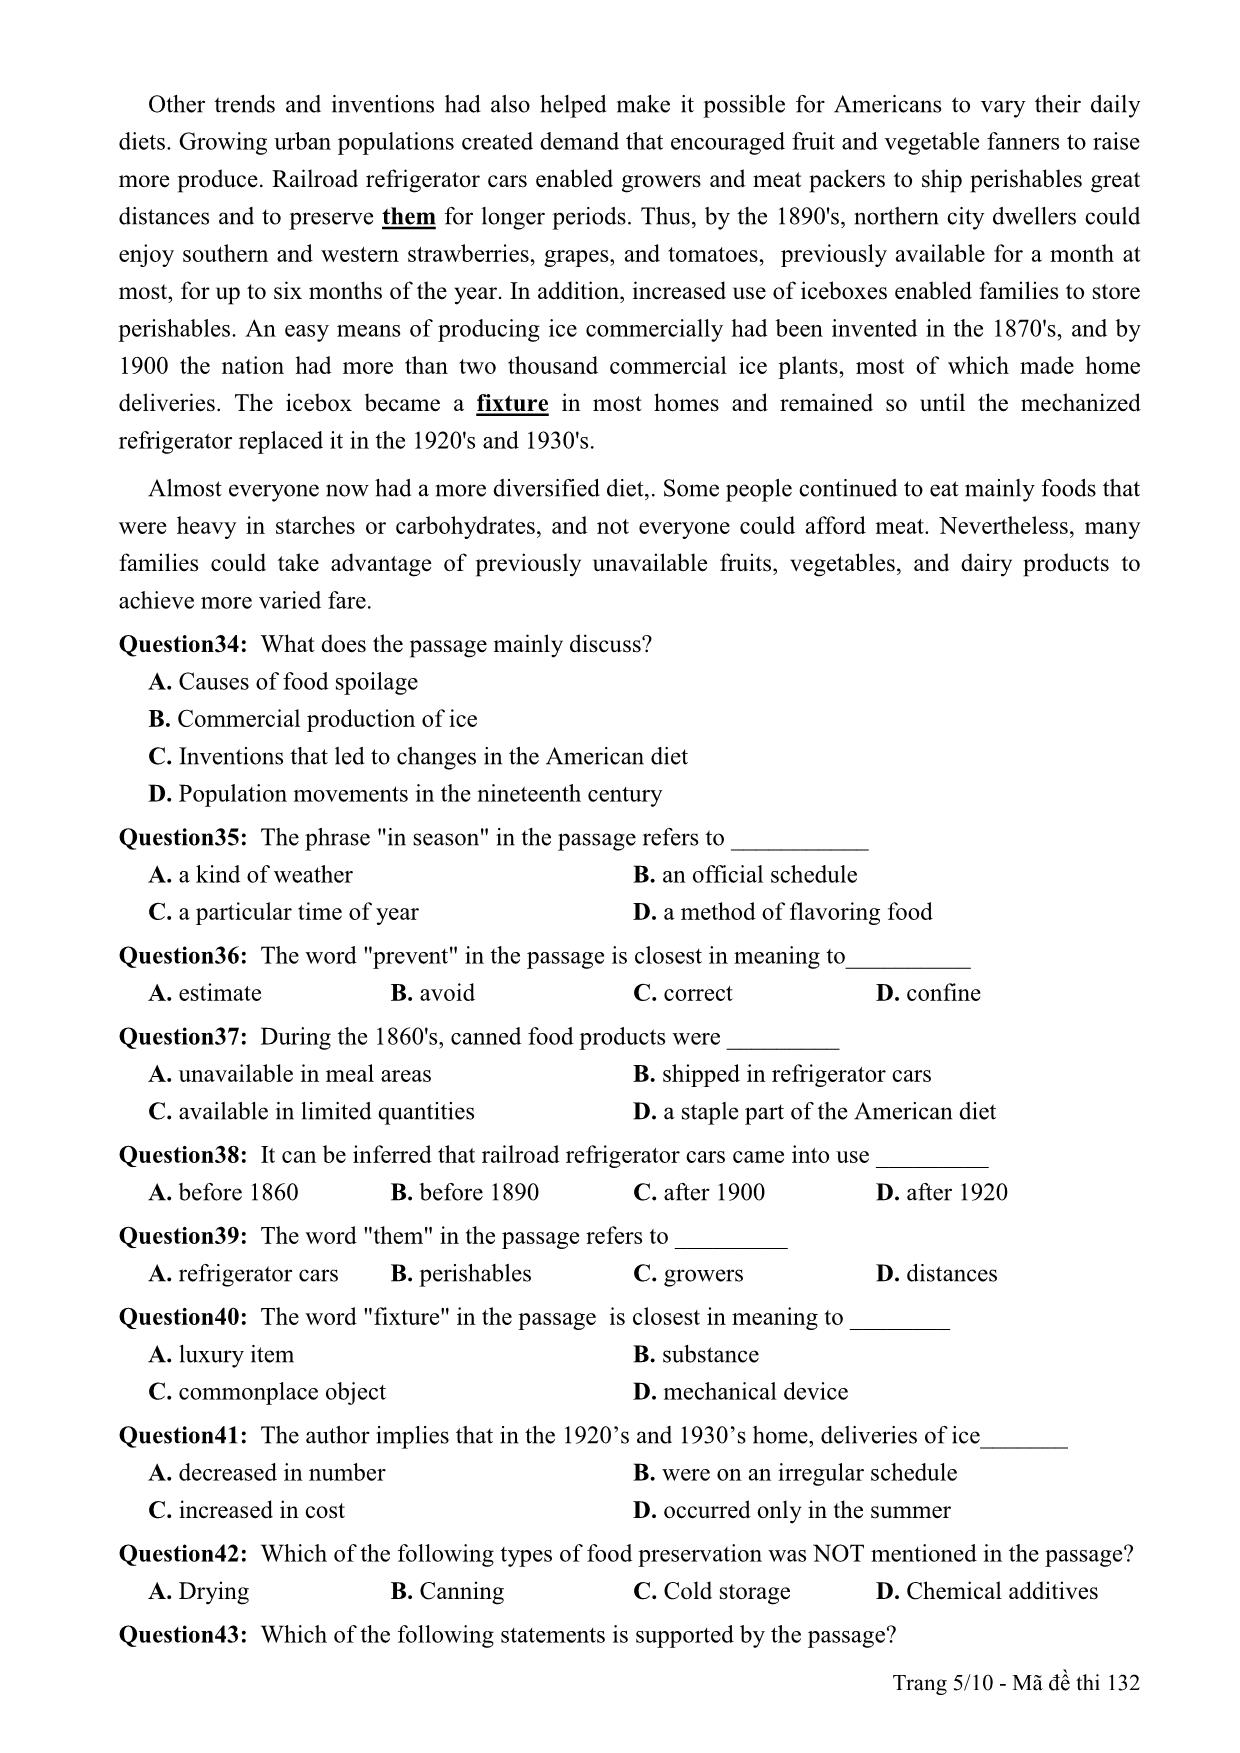 Đề thi thử THPT Quốc gia môn Tiếng Anh - Mã đề 132 - Năm học 2014-2015 - Trường THPT Lương Ngọc Quyến (Có đáp án) trang 5